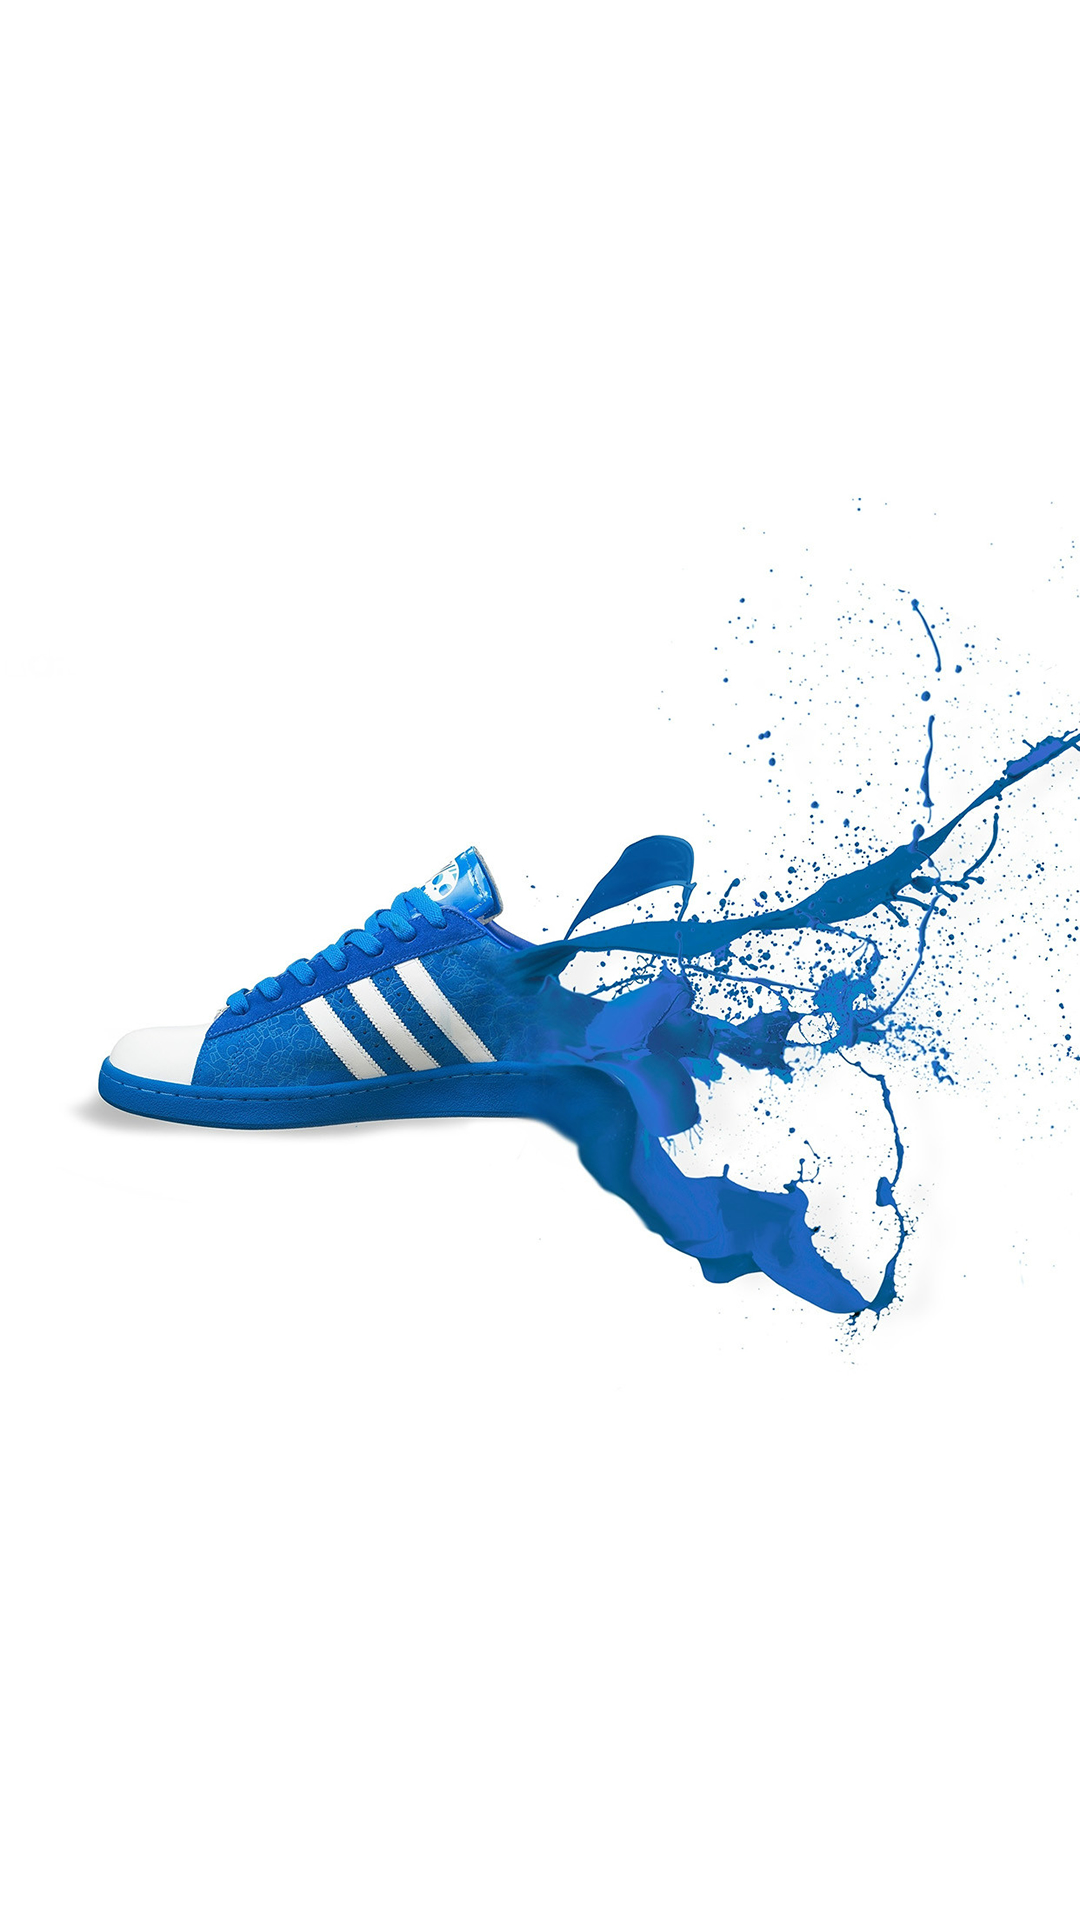 carta da parati nwa per iphone,blu,calzature,blu elettrico,scarpa,scarpe da ginnastica